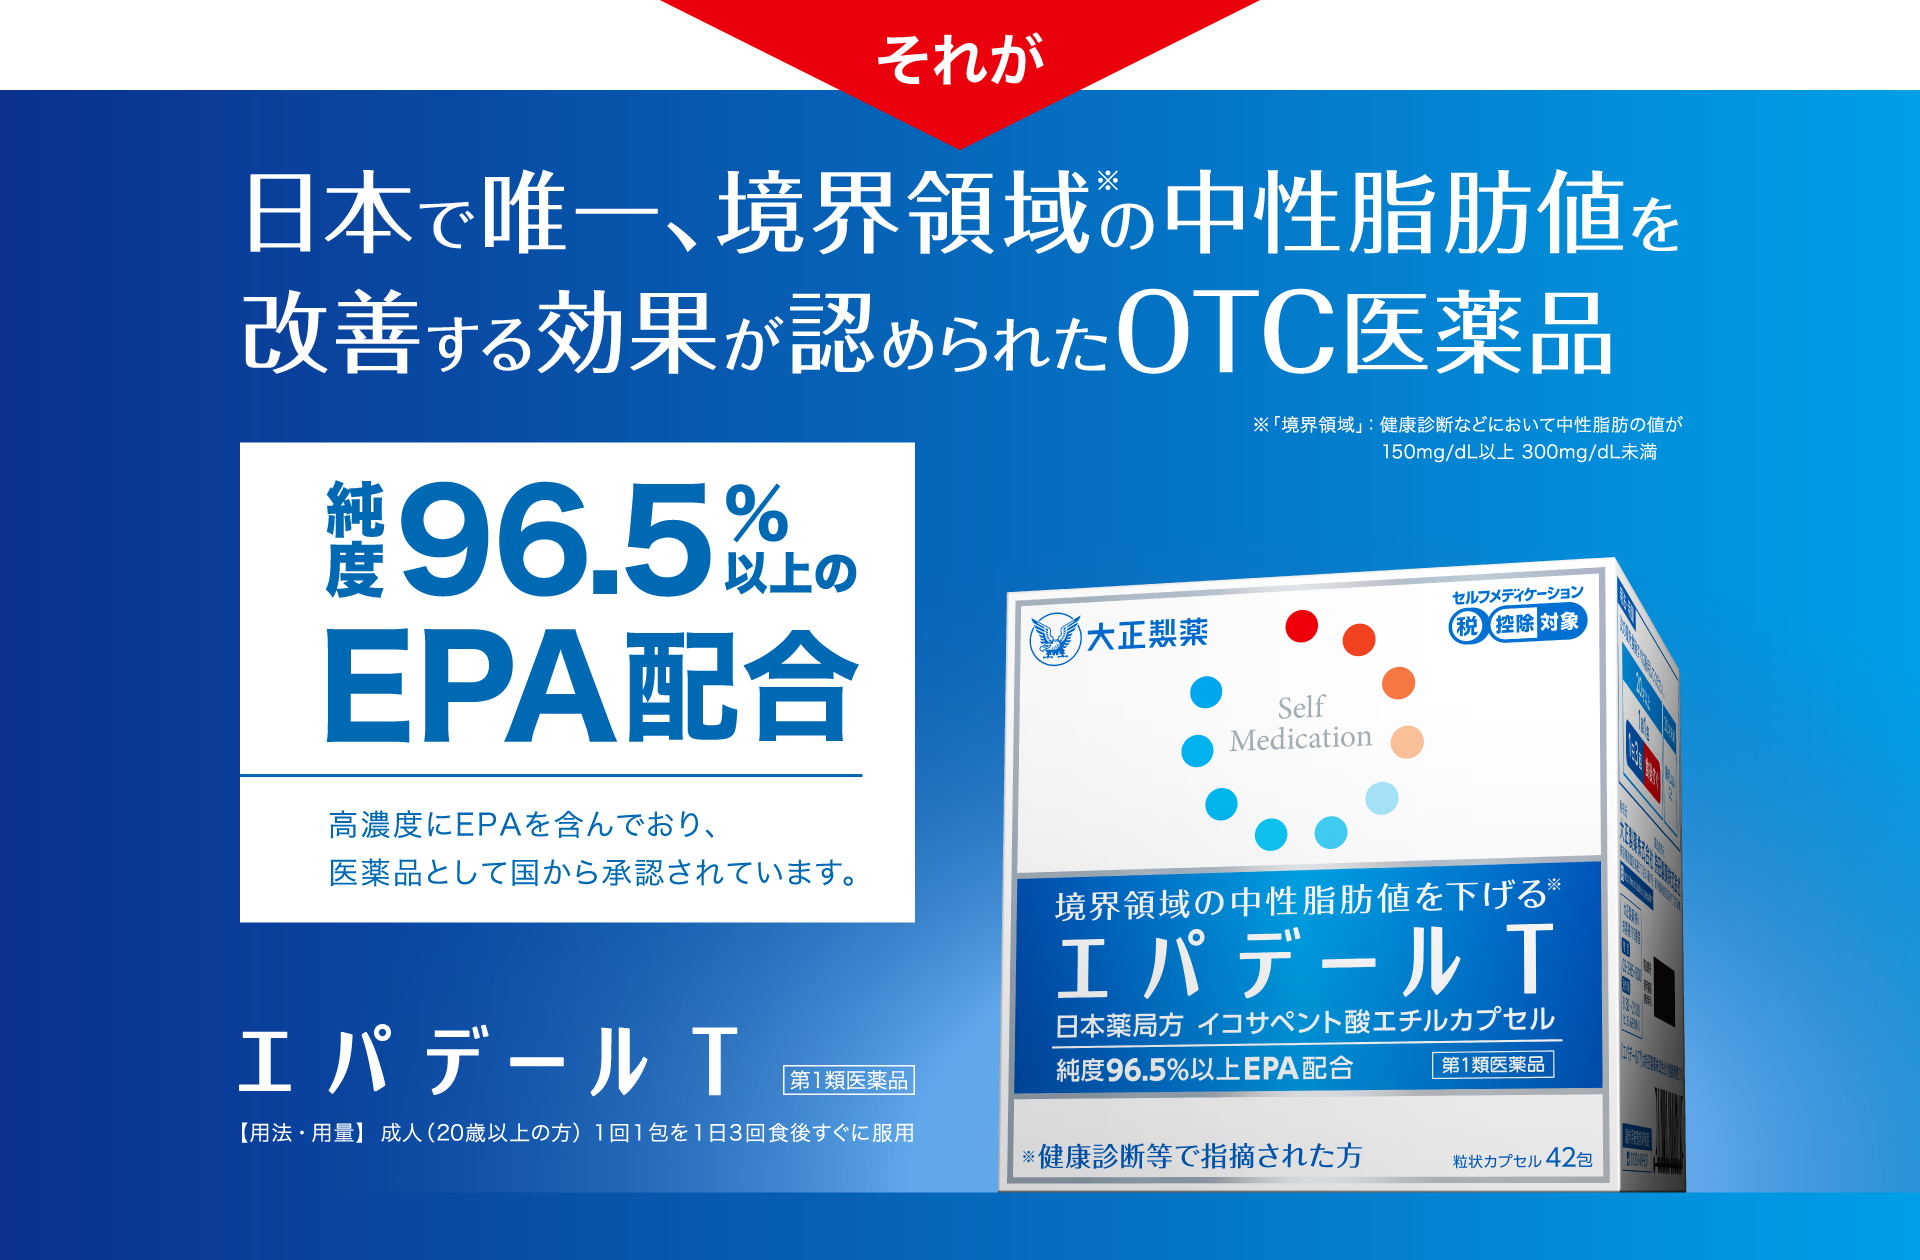 日本で唯一、境界領域の中性脂肪値を改善する効果が認められたOTC医薬品